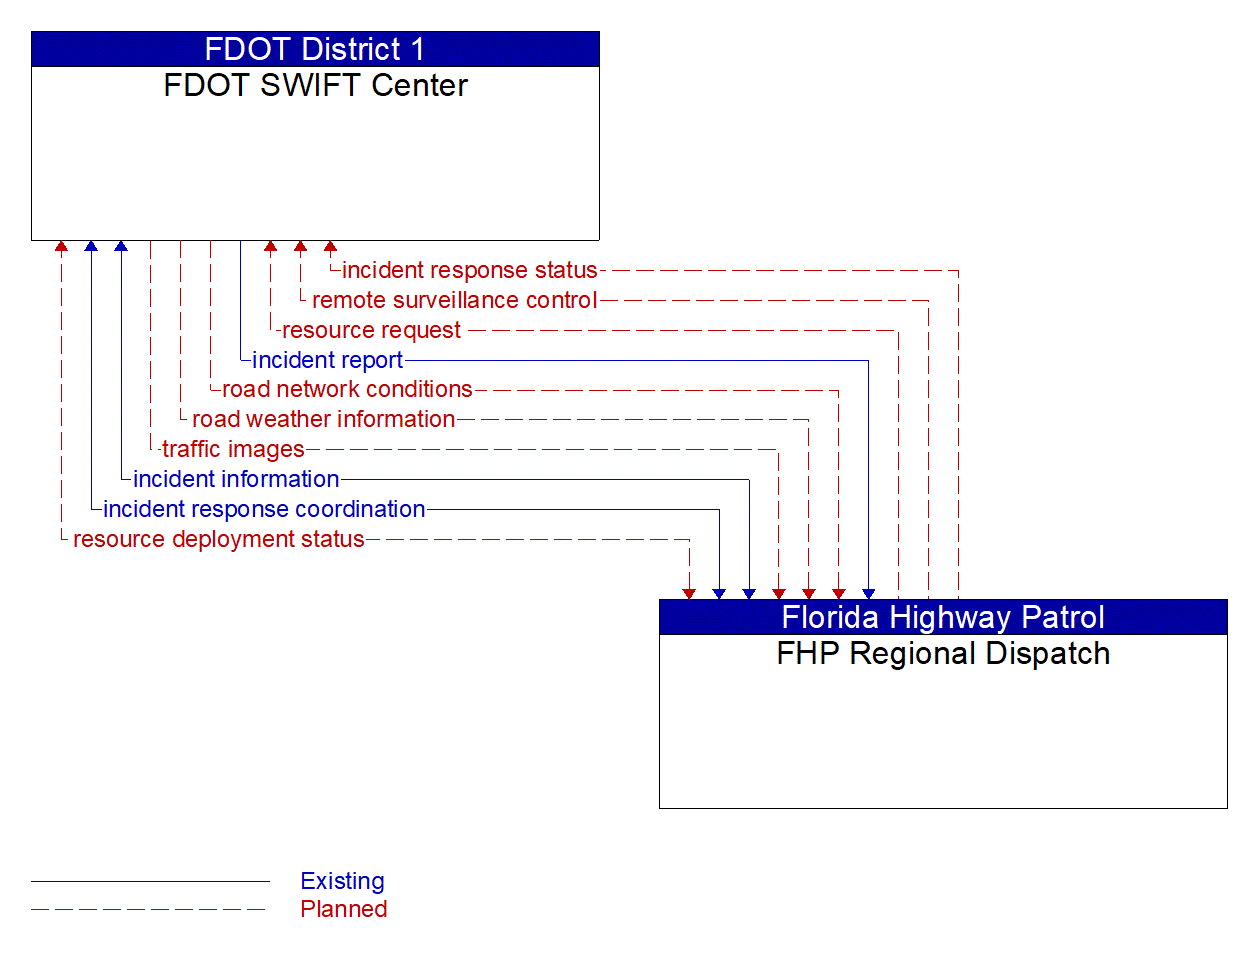 Architecture Flow Diagram: FHP Regional Dispatch <--> FDOT SWIFT Center